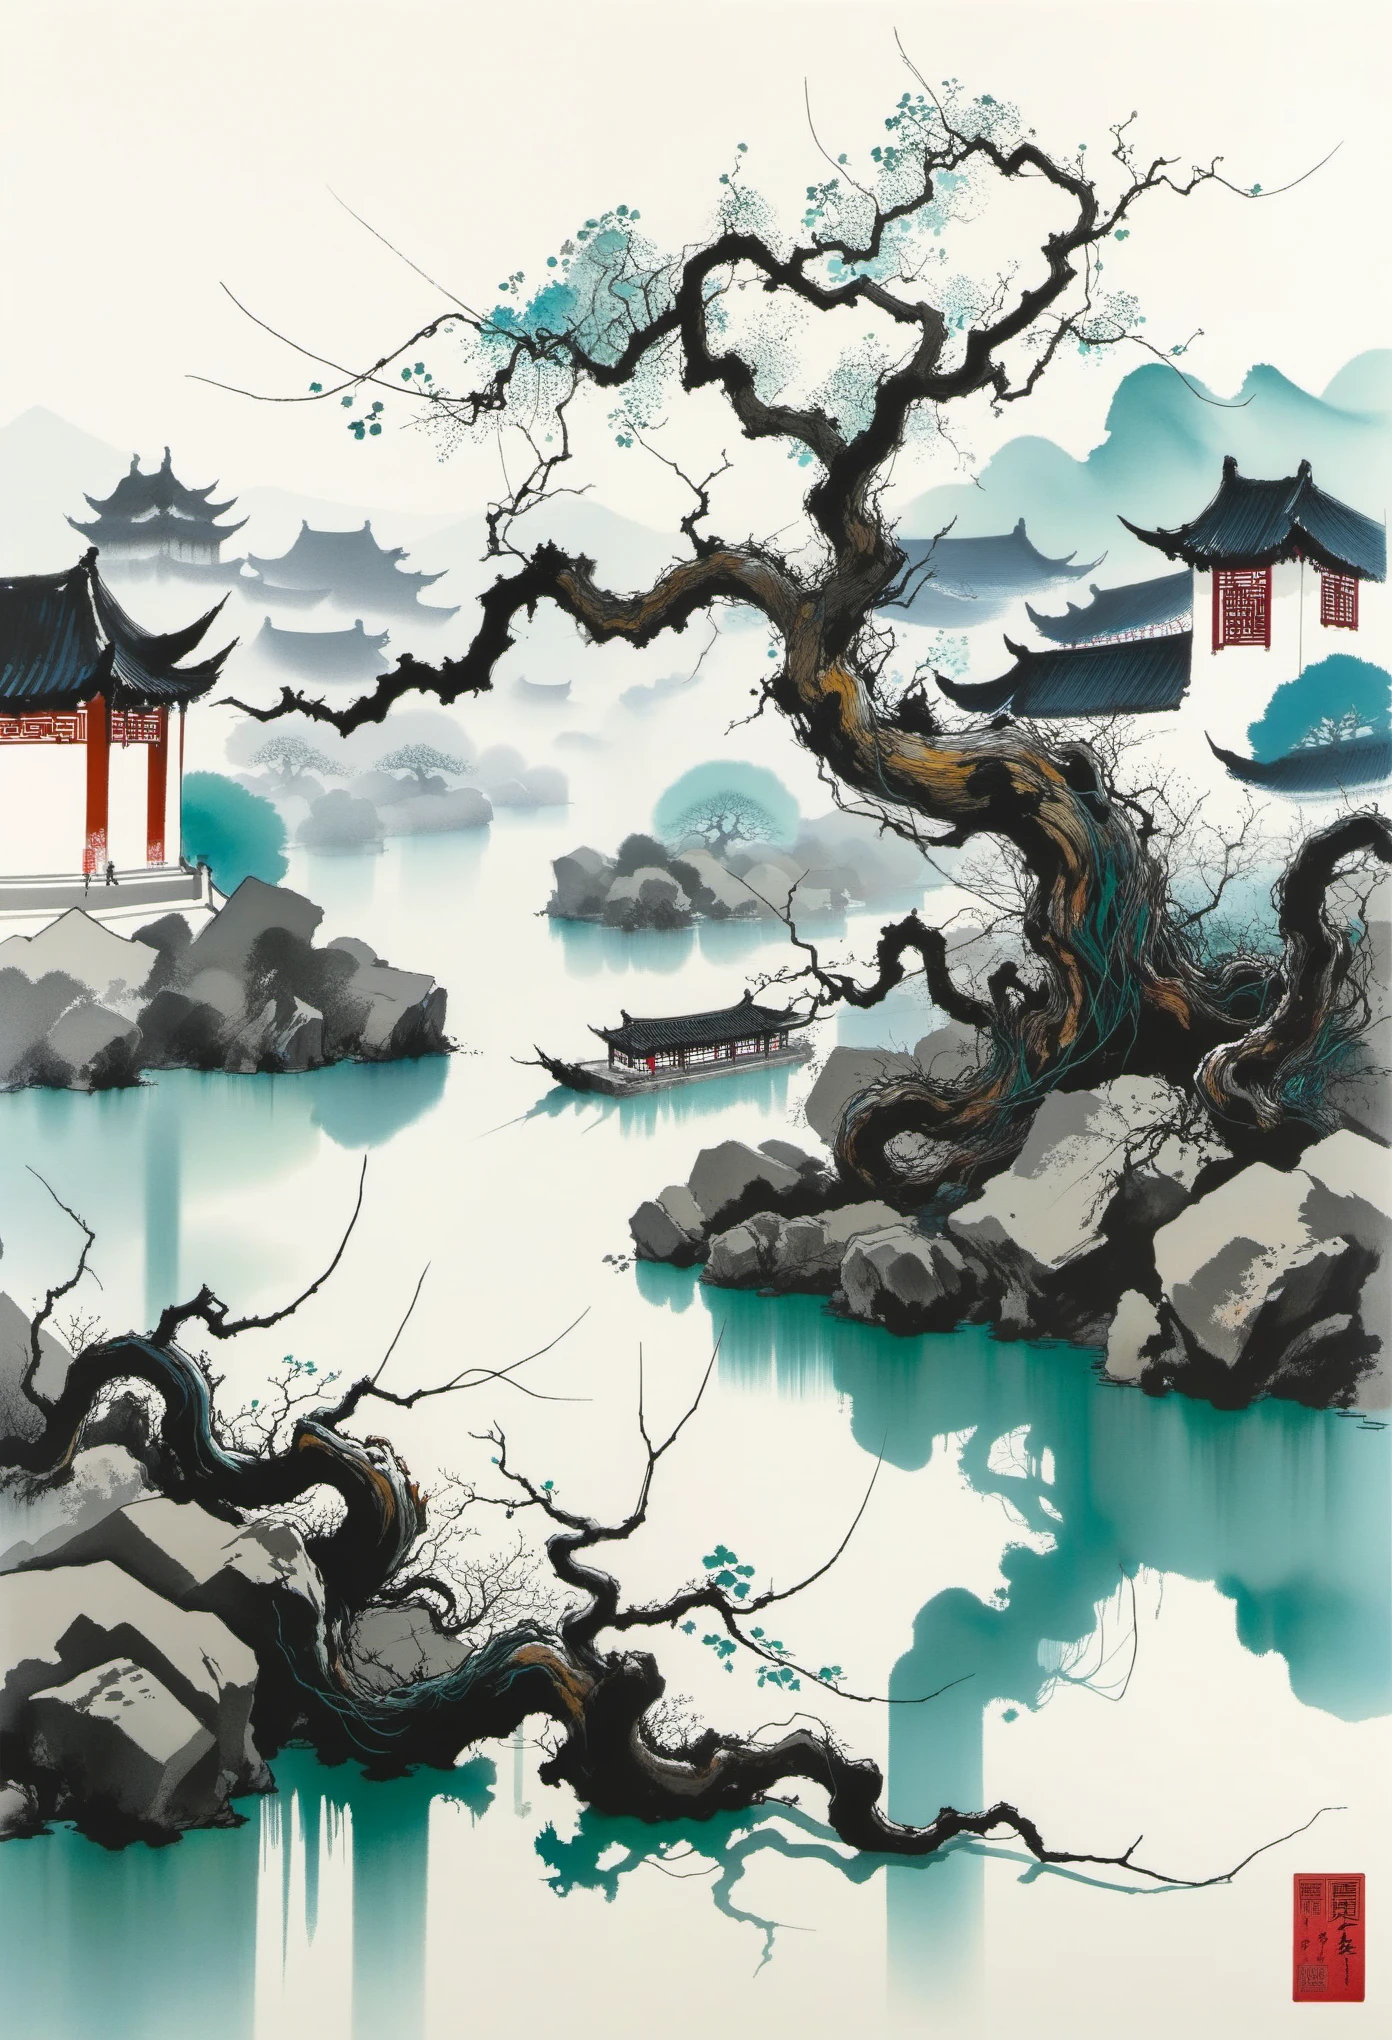 枯れたブドウの木，古い木，シャオチャオ，流れる水，幾何学的抽象インク，江南景観建築群について説明する，呉貫中のスタイルは、伝統的な中国の水墨技法と西洋の絵画の概念を融合した芸術表現である。. 伝統的なテーマを現代的に解釈したのが特徴です, 色と線でユニークな視覚効果を生み出す.